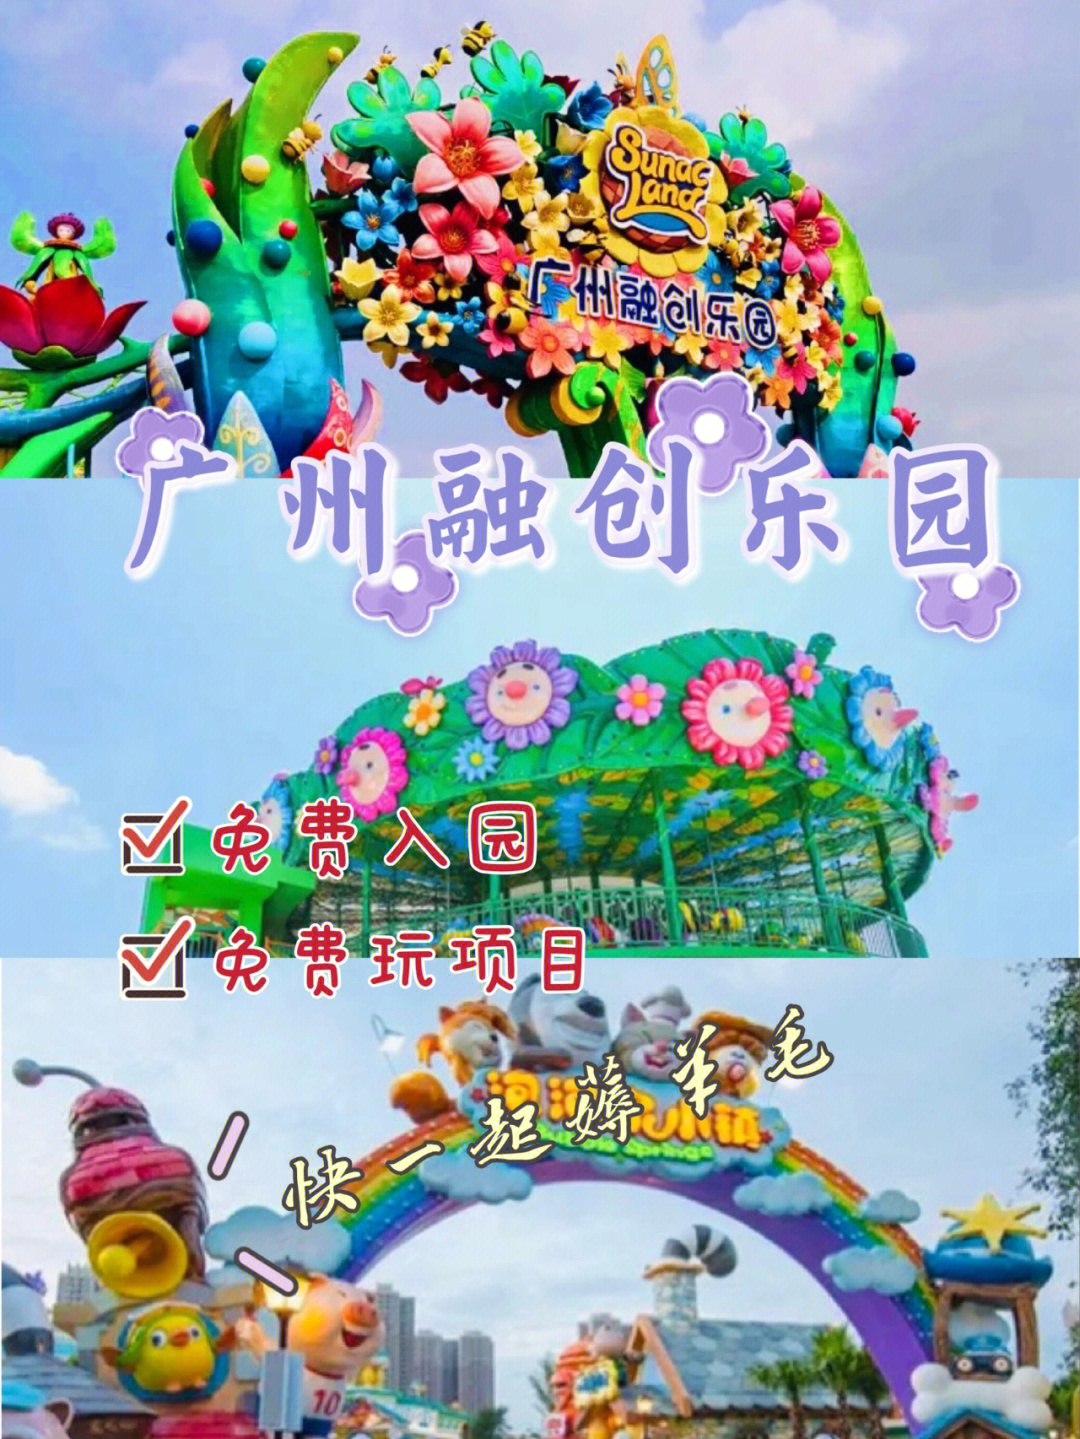 广州融创乐园果虫列车图片